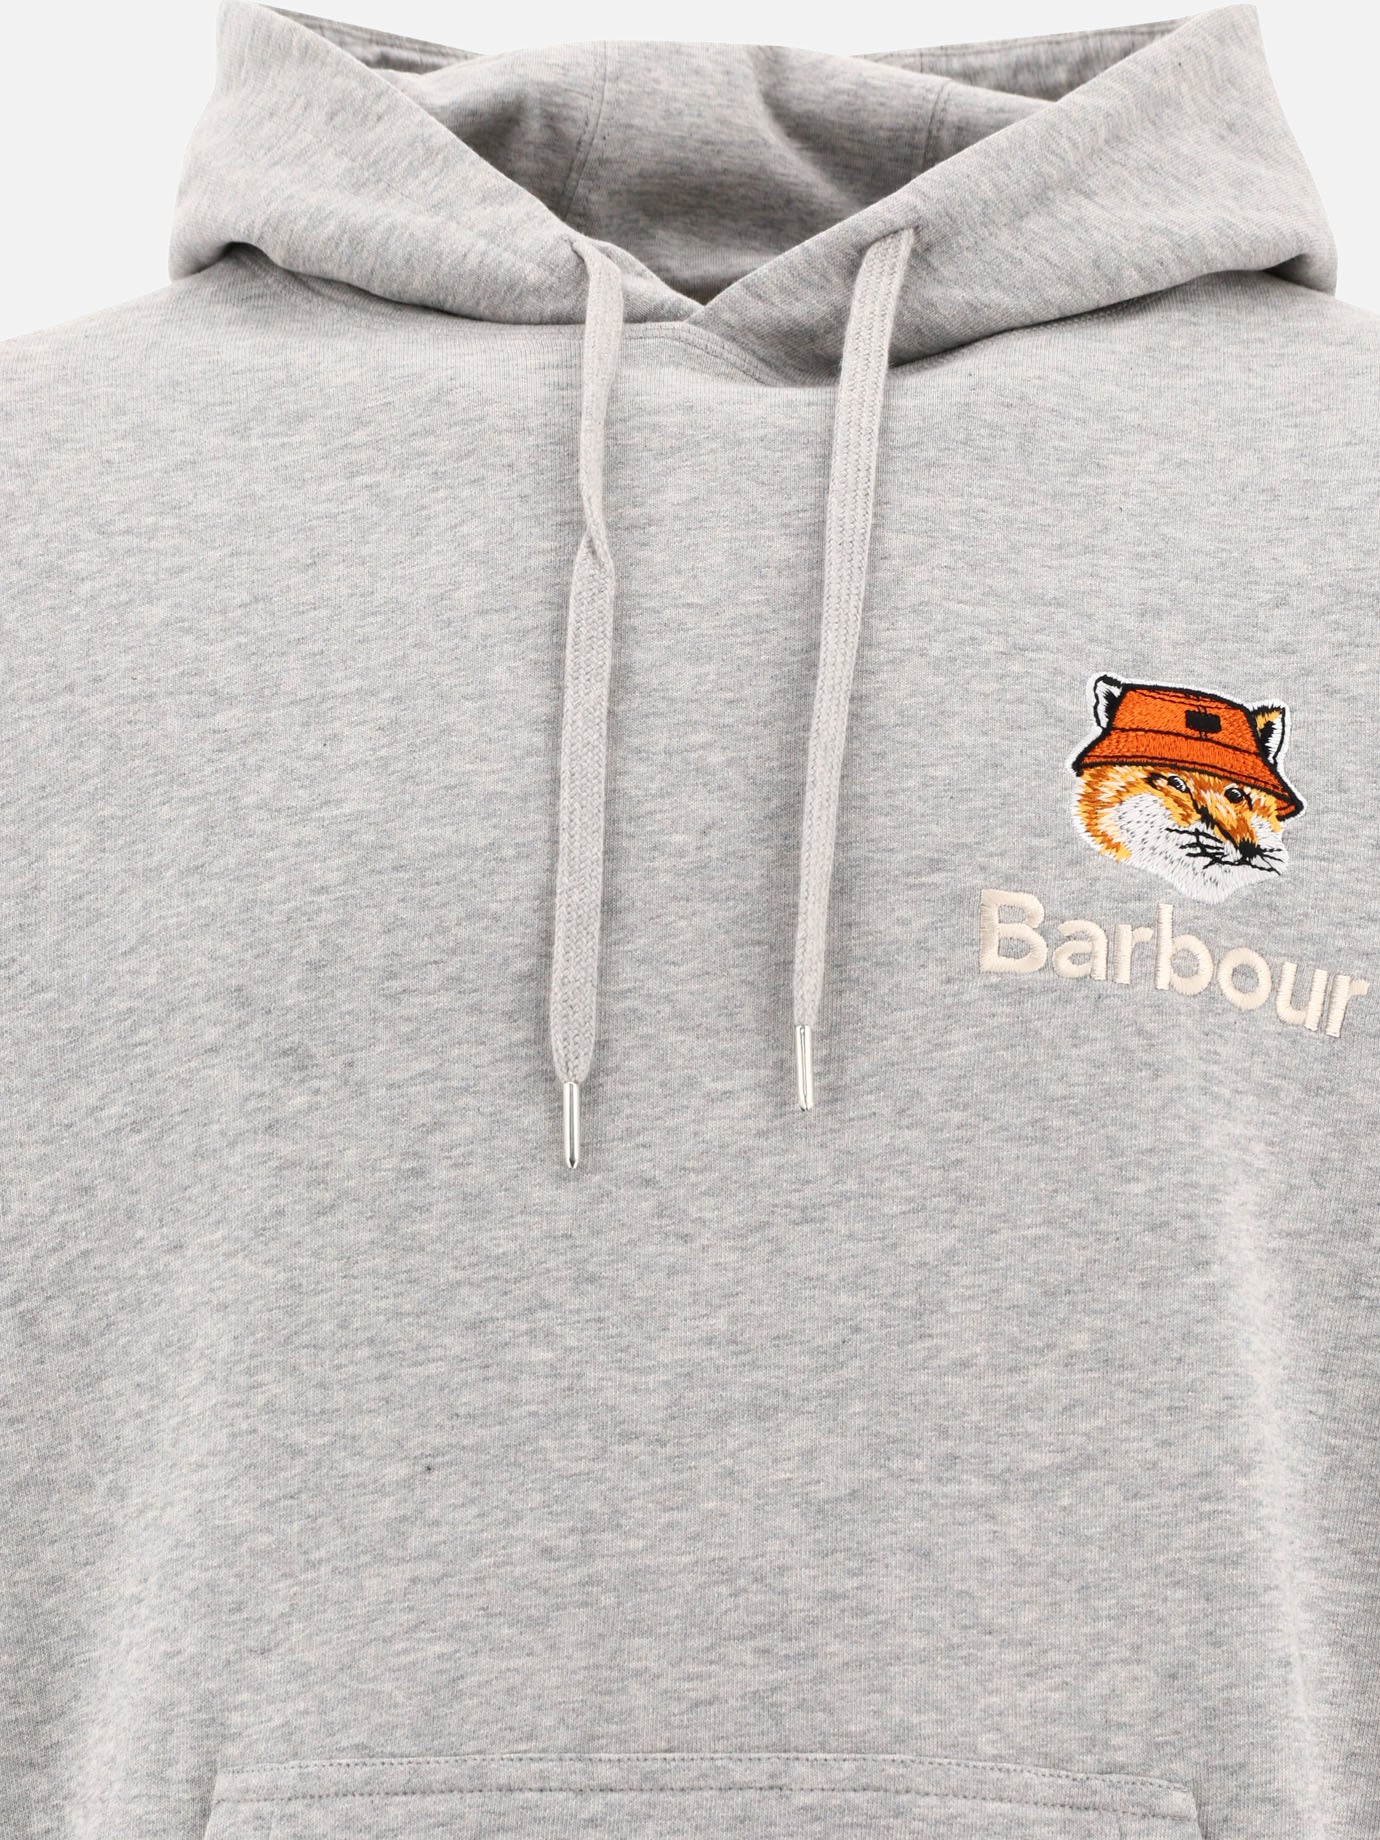 "Barbour x Maison Kitsuné" hoodie